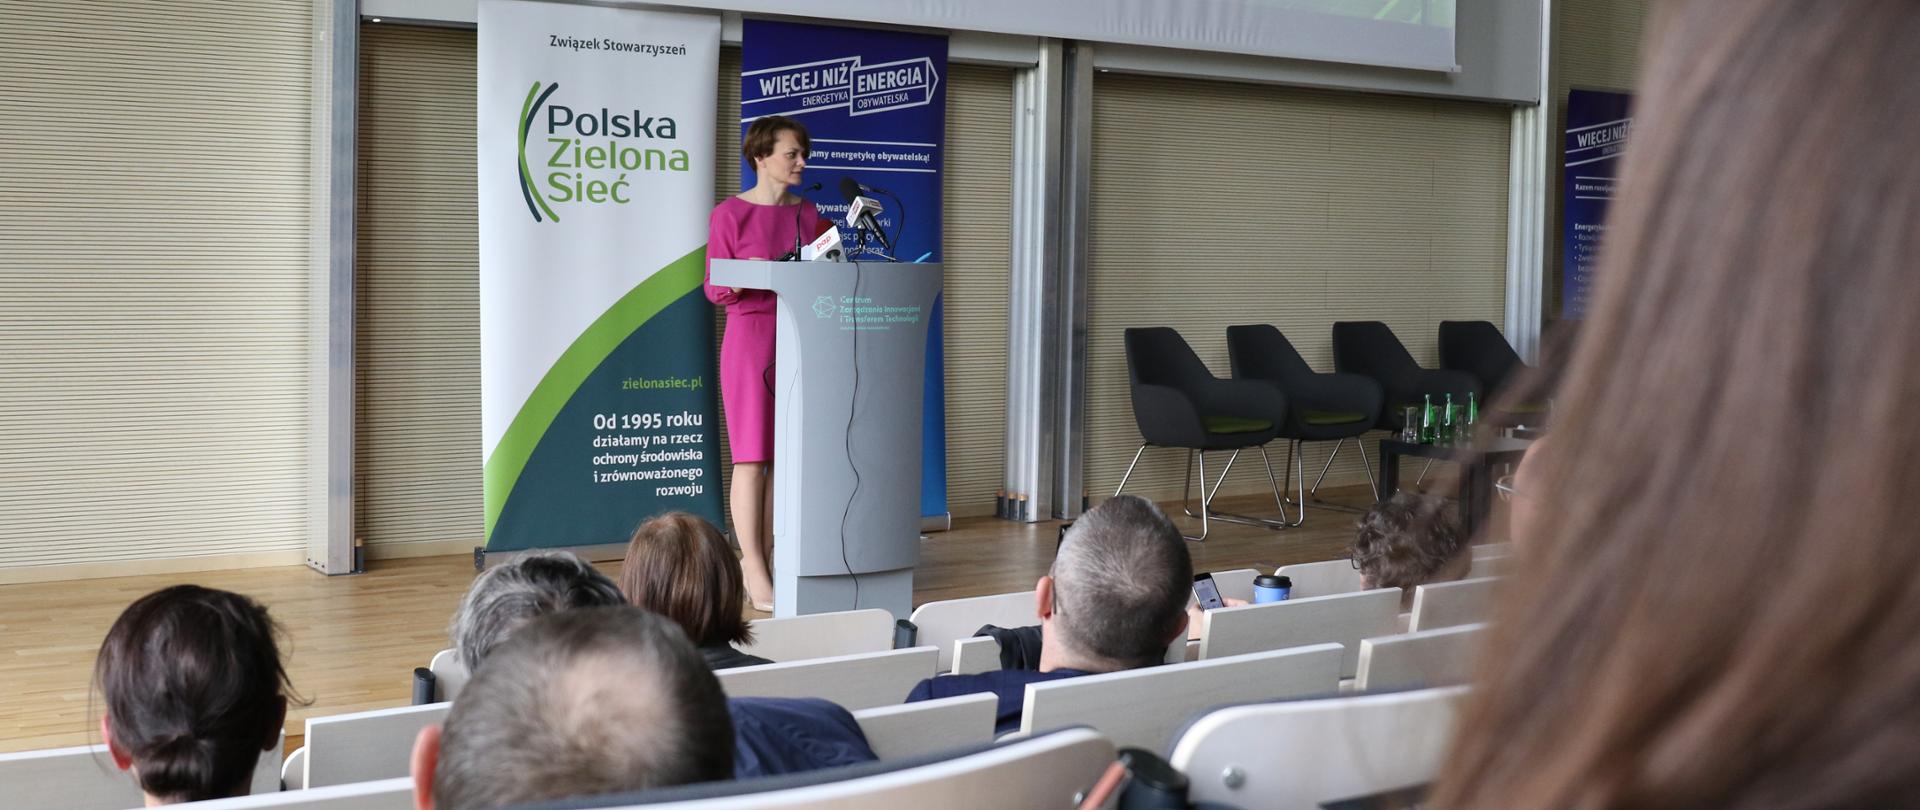 Jadwiga Emilewicz przy mównicy opowiada o programie Energia Plus na III Kongresie Energetyki Obywatelskiej. Stoi na scenie. Za nią prezentacja z napisem "energia".